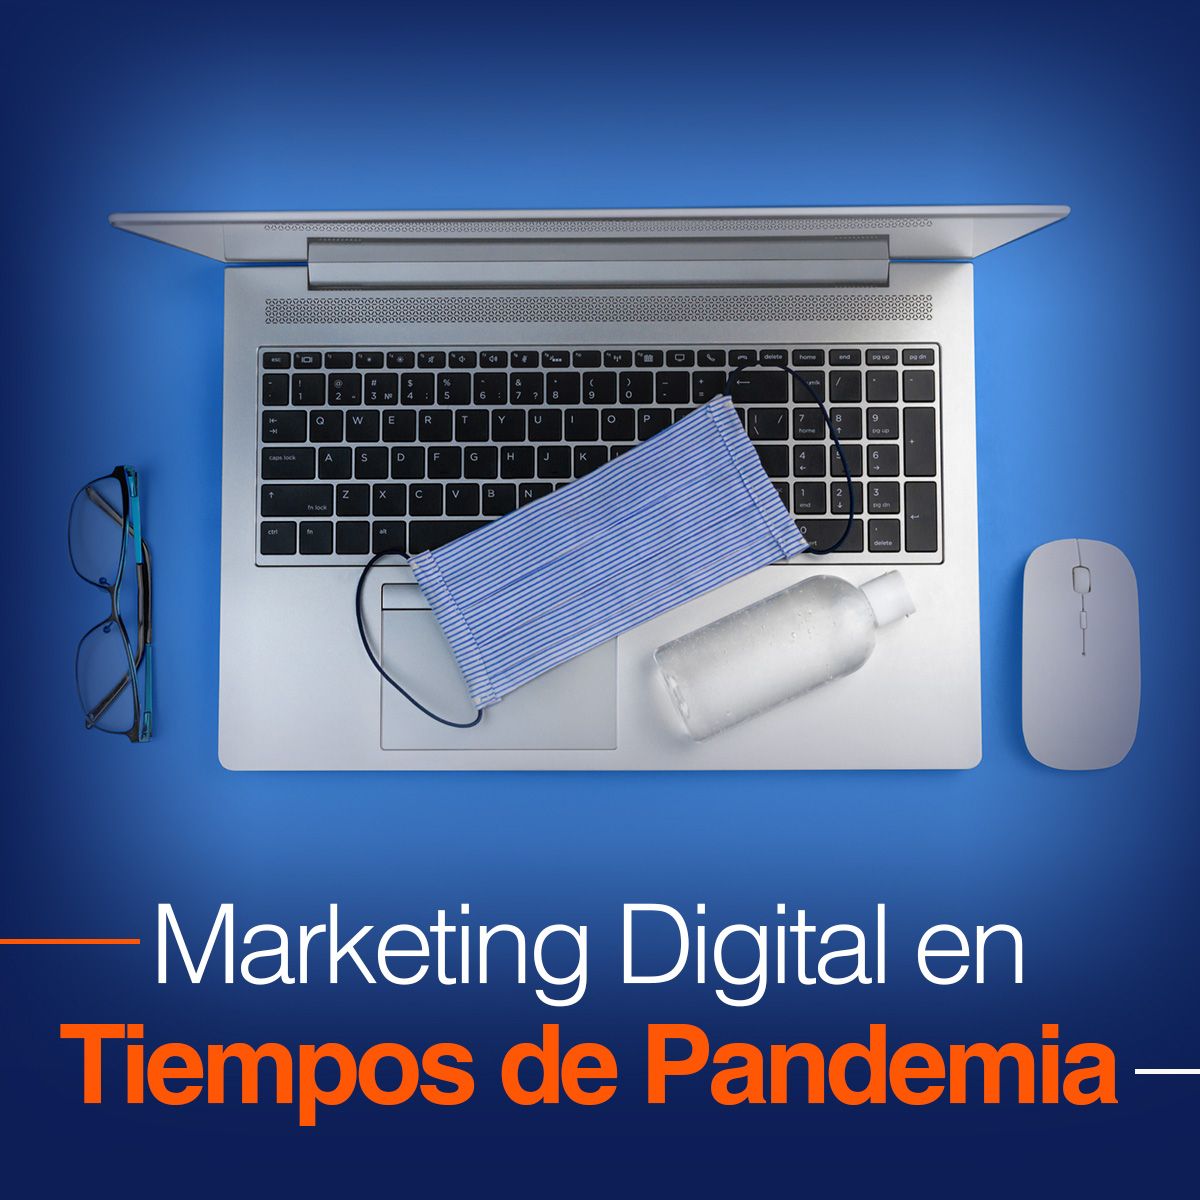 Marketing Digital en Tiempos de Pandemia